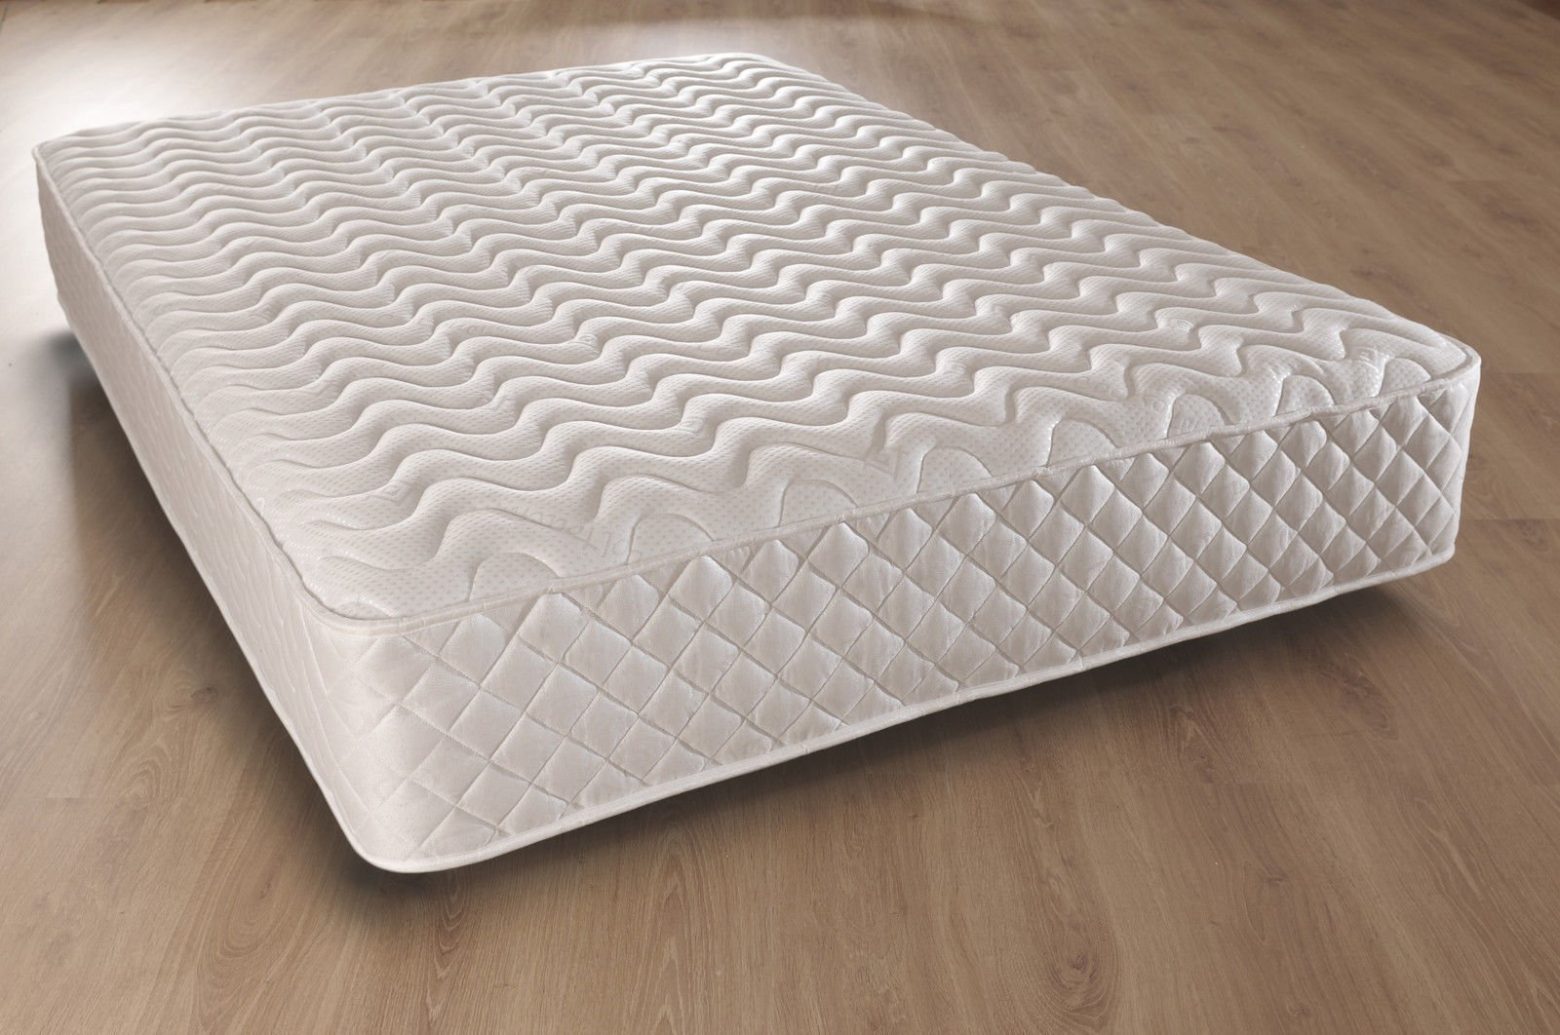 foam that feels like spring mattress